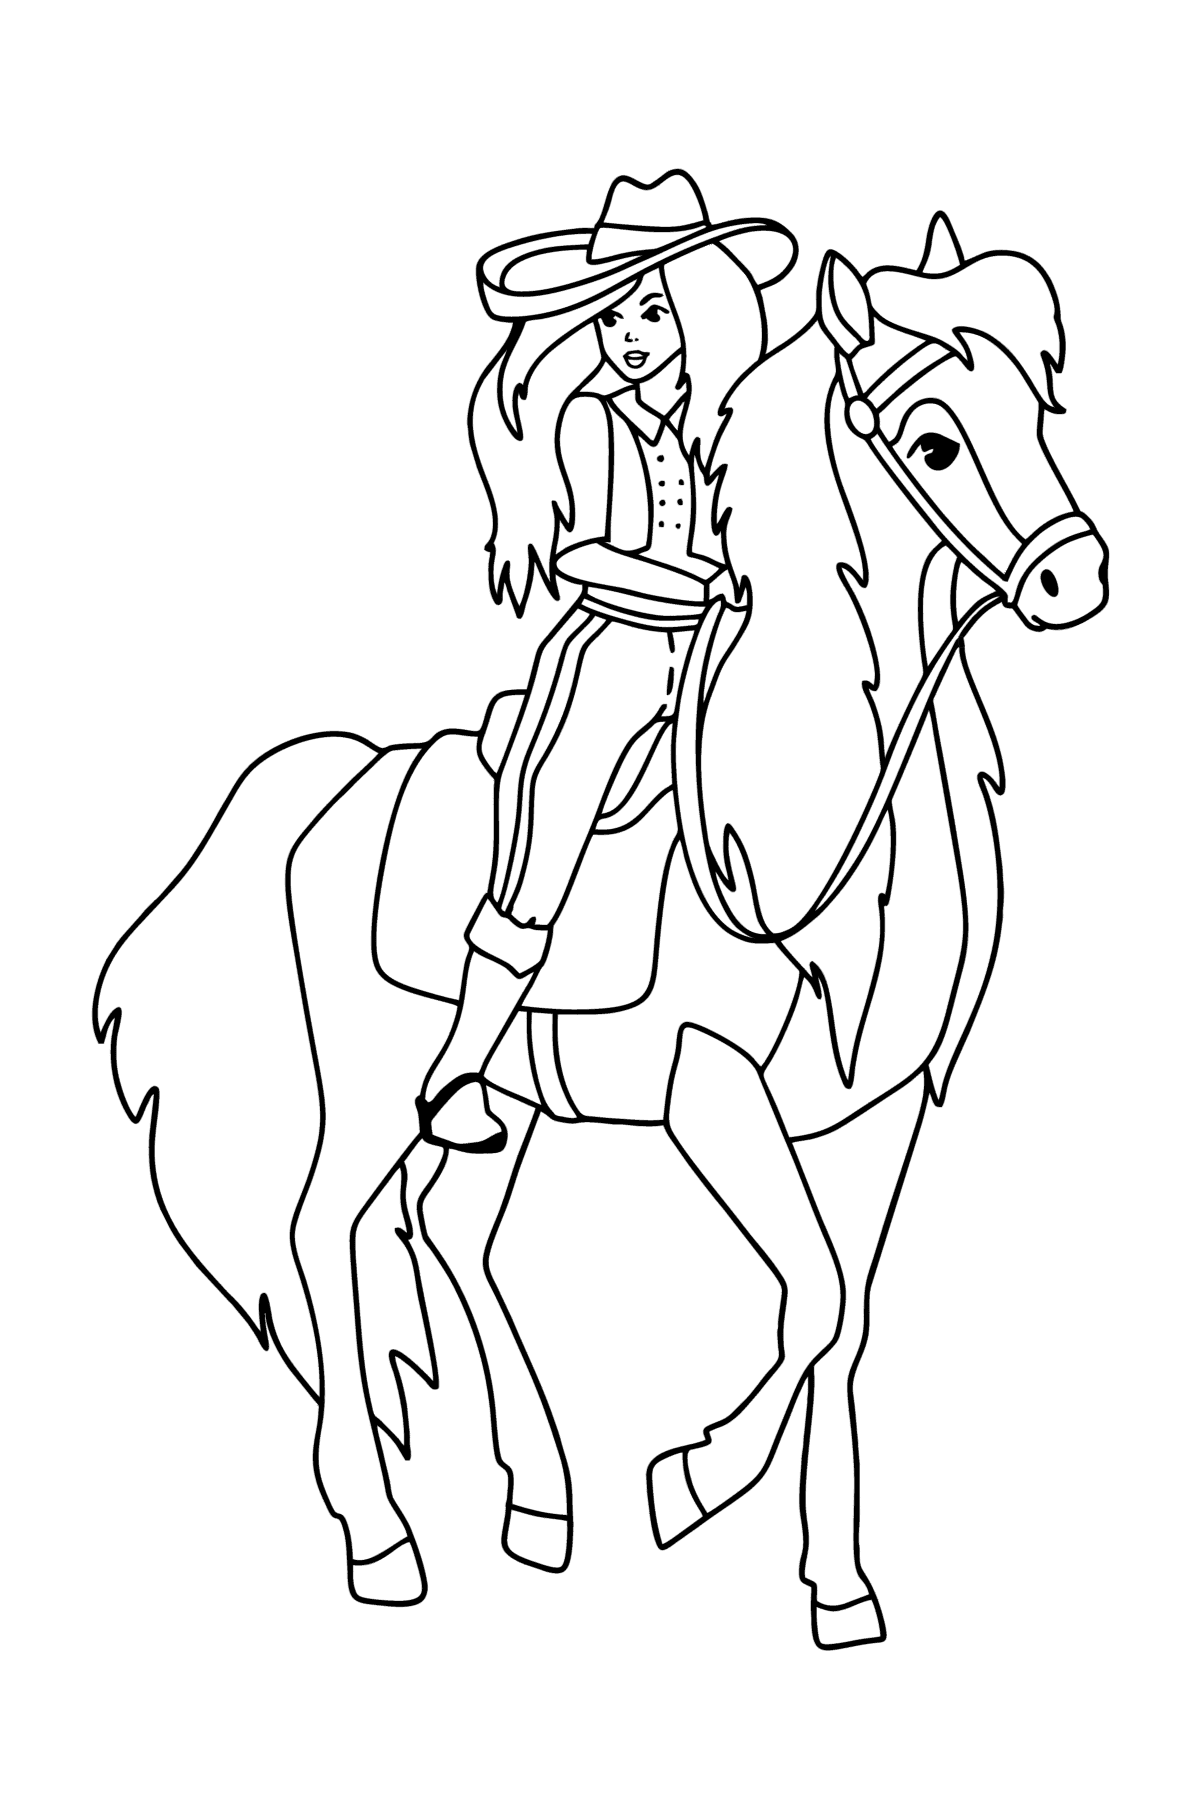 Tegning til fargelegging Jente på hest - Tegninger til fargelegging for barn